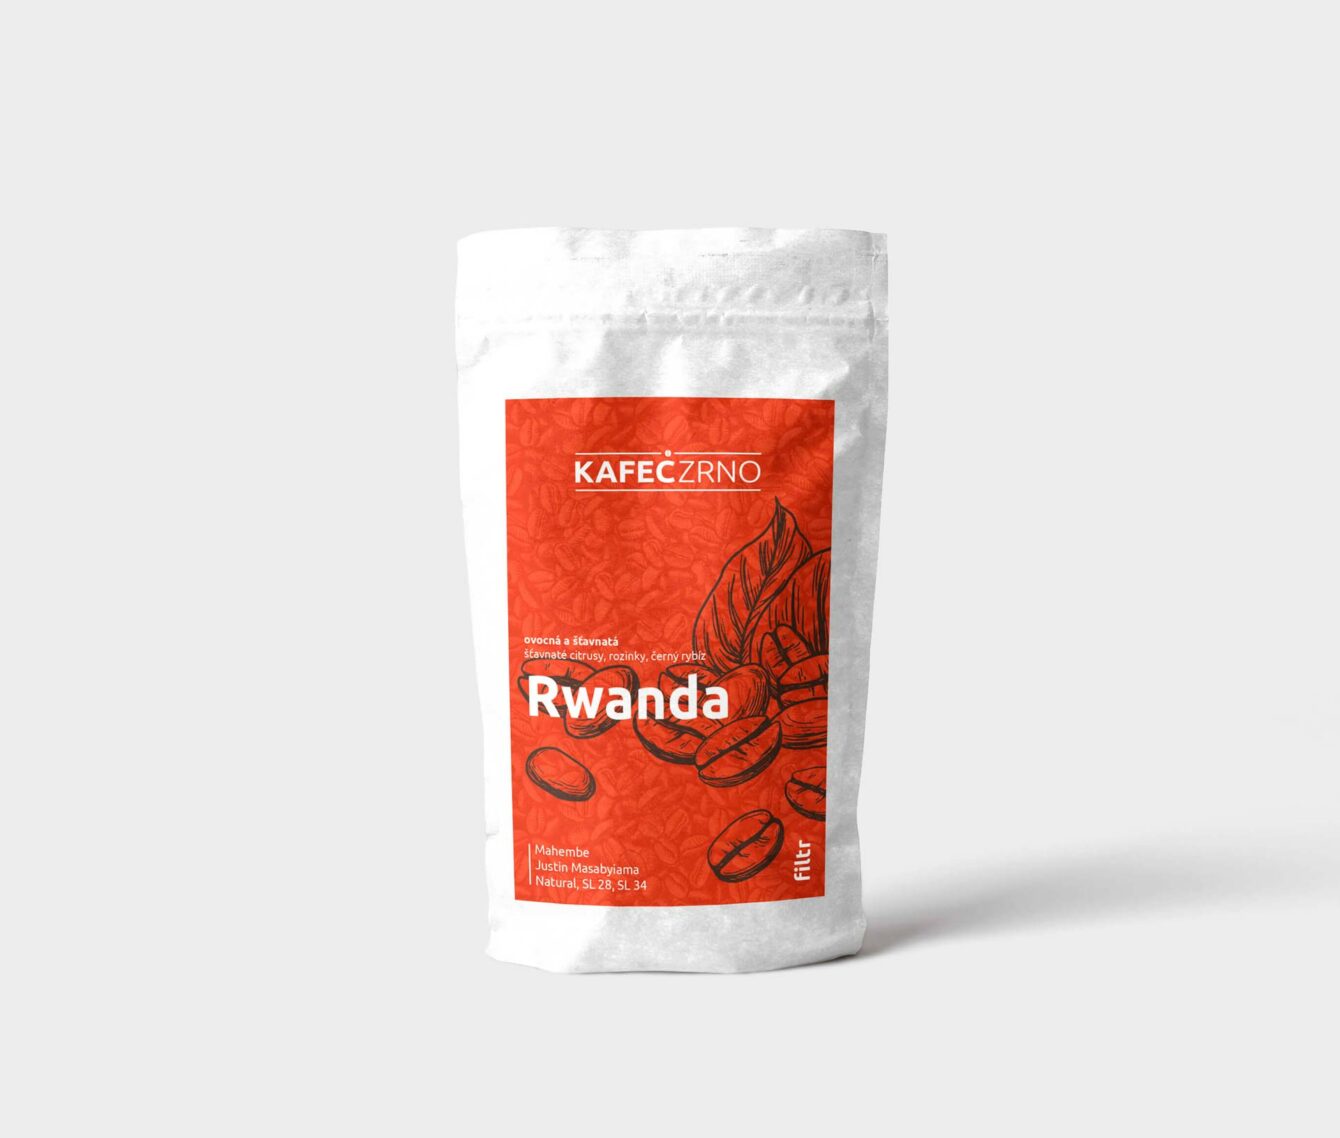 Návrh obalů na kávu Rwanda